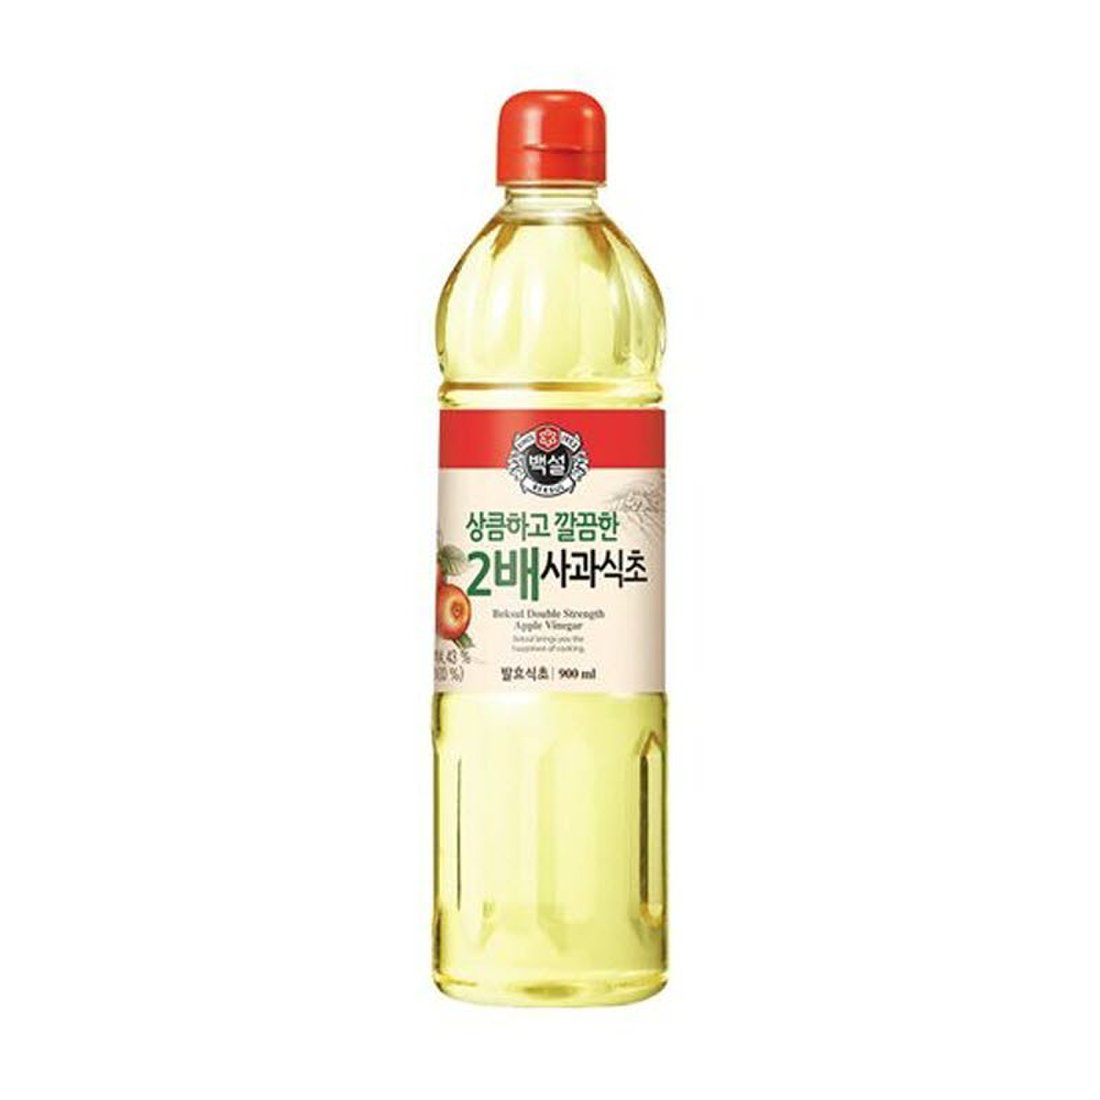 CJ Baeksul Apple Vinegar (2X) 900ml/ CJ 백설 2배 사과식초 900ml